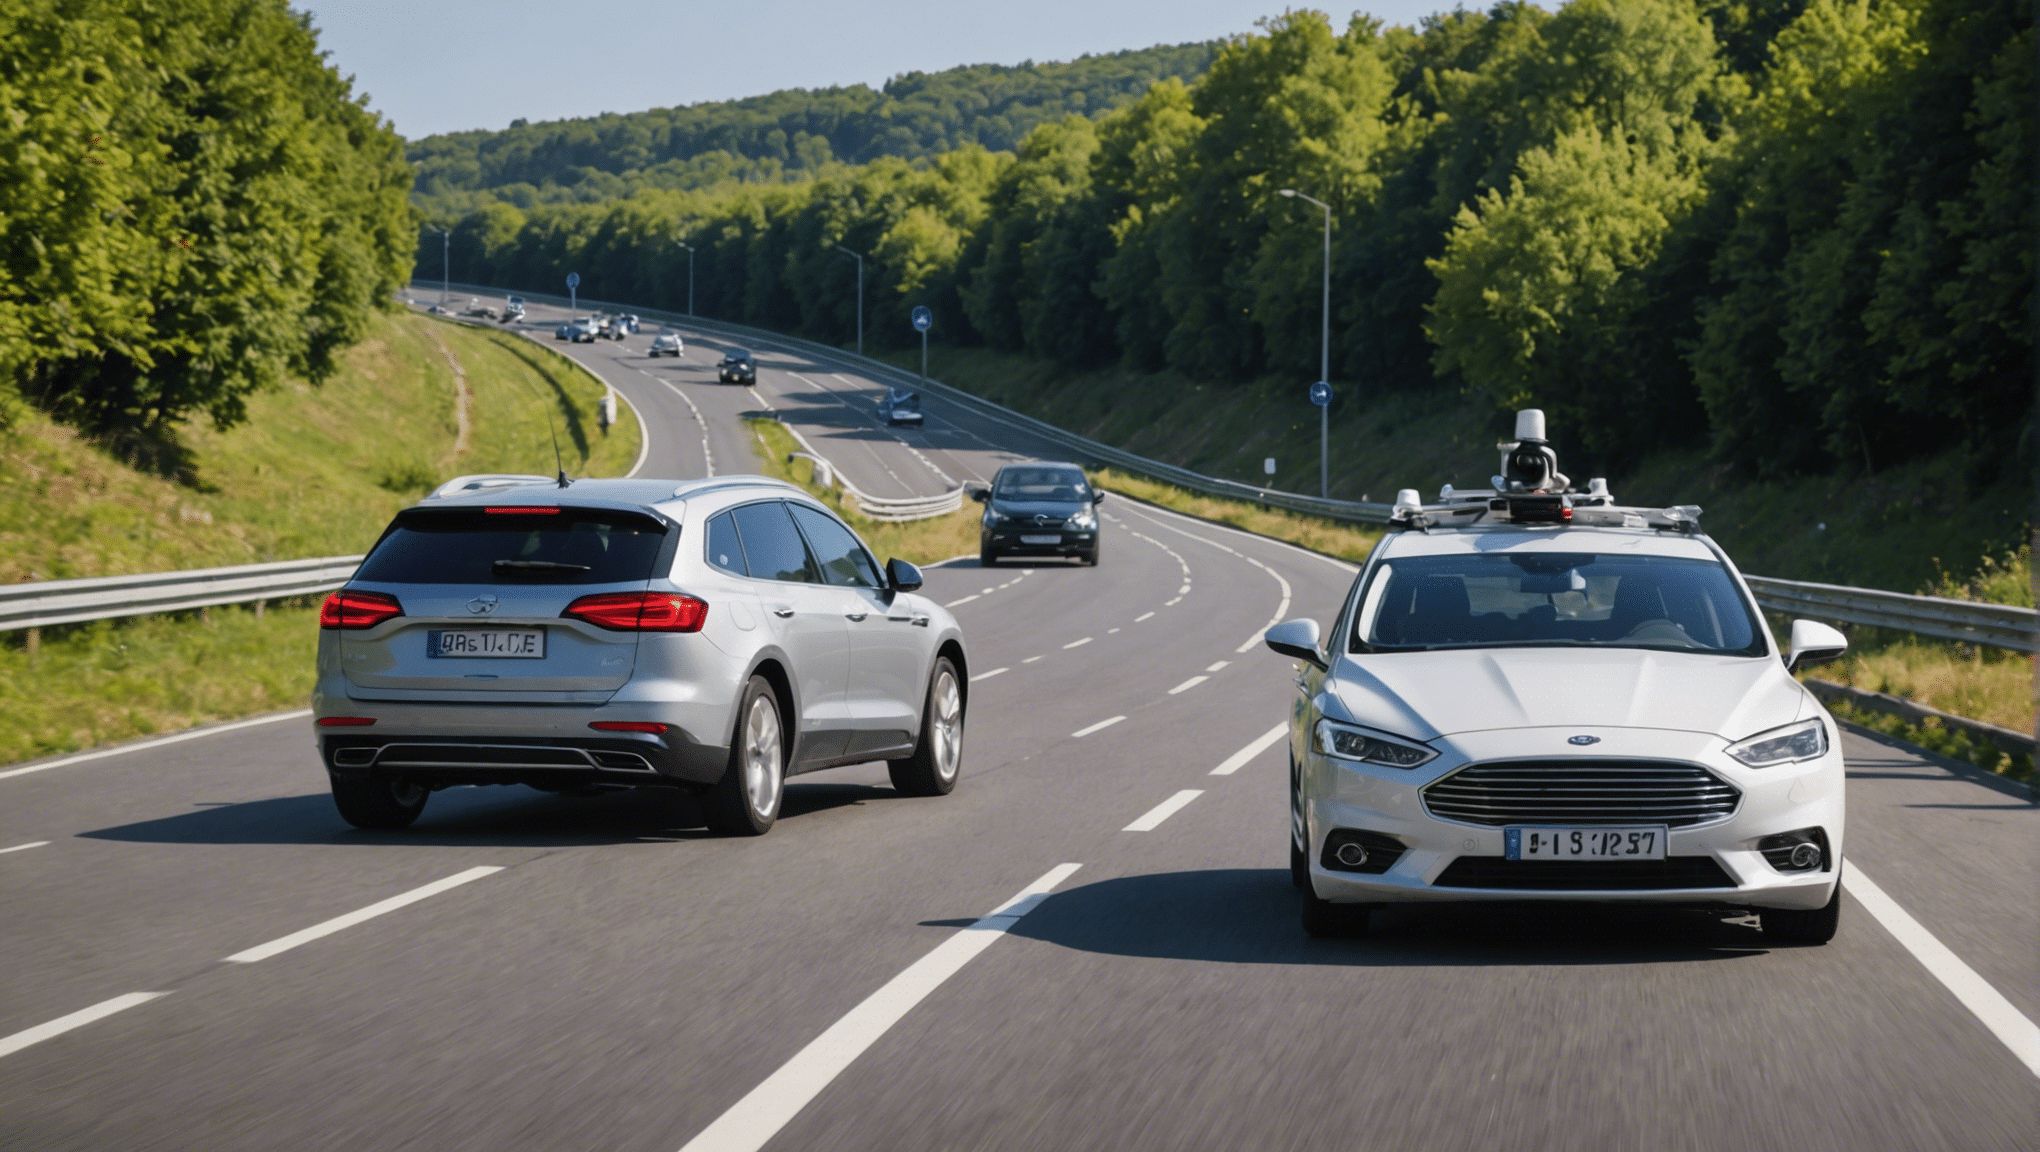 découvrez les défis technologiques que doit surmonter la conduite autonome pour s'imposer sur nos routes dans cet article informatif.